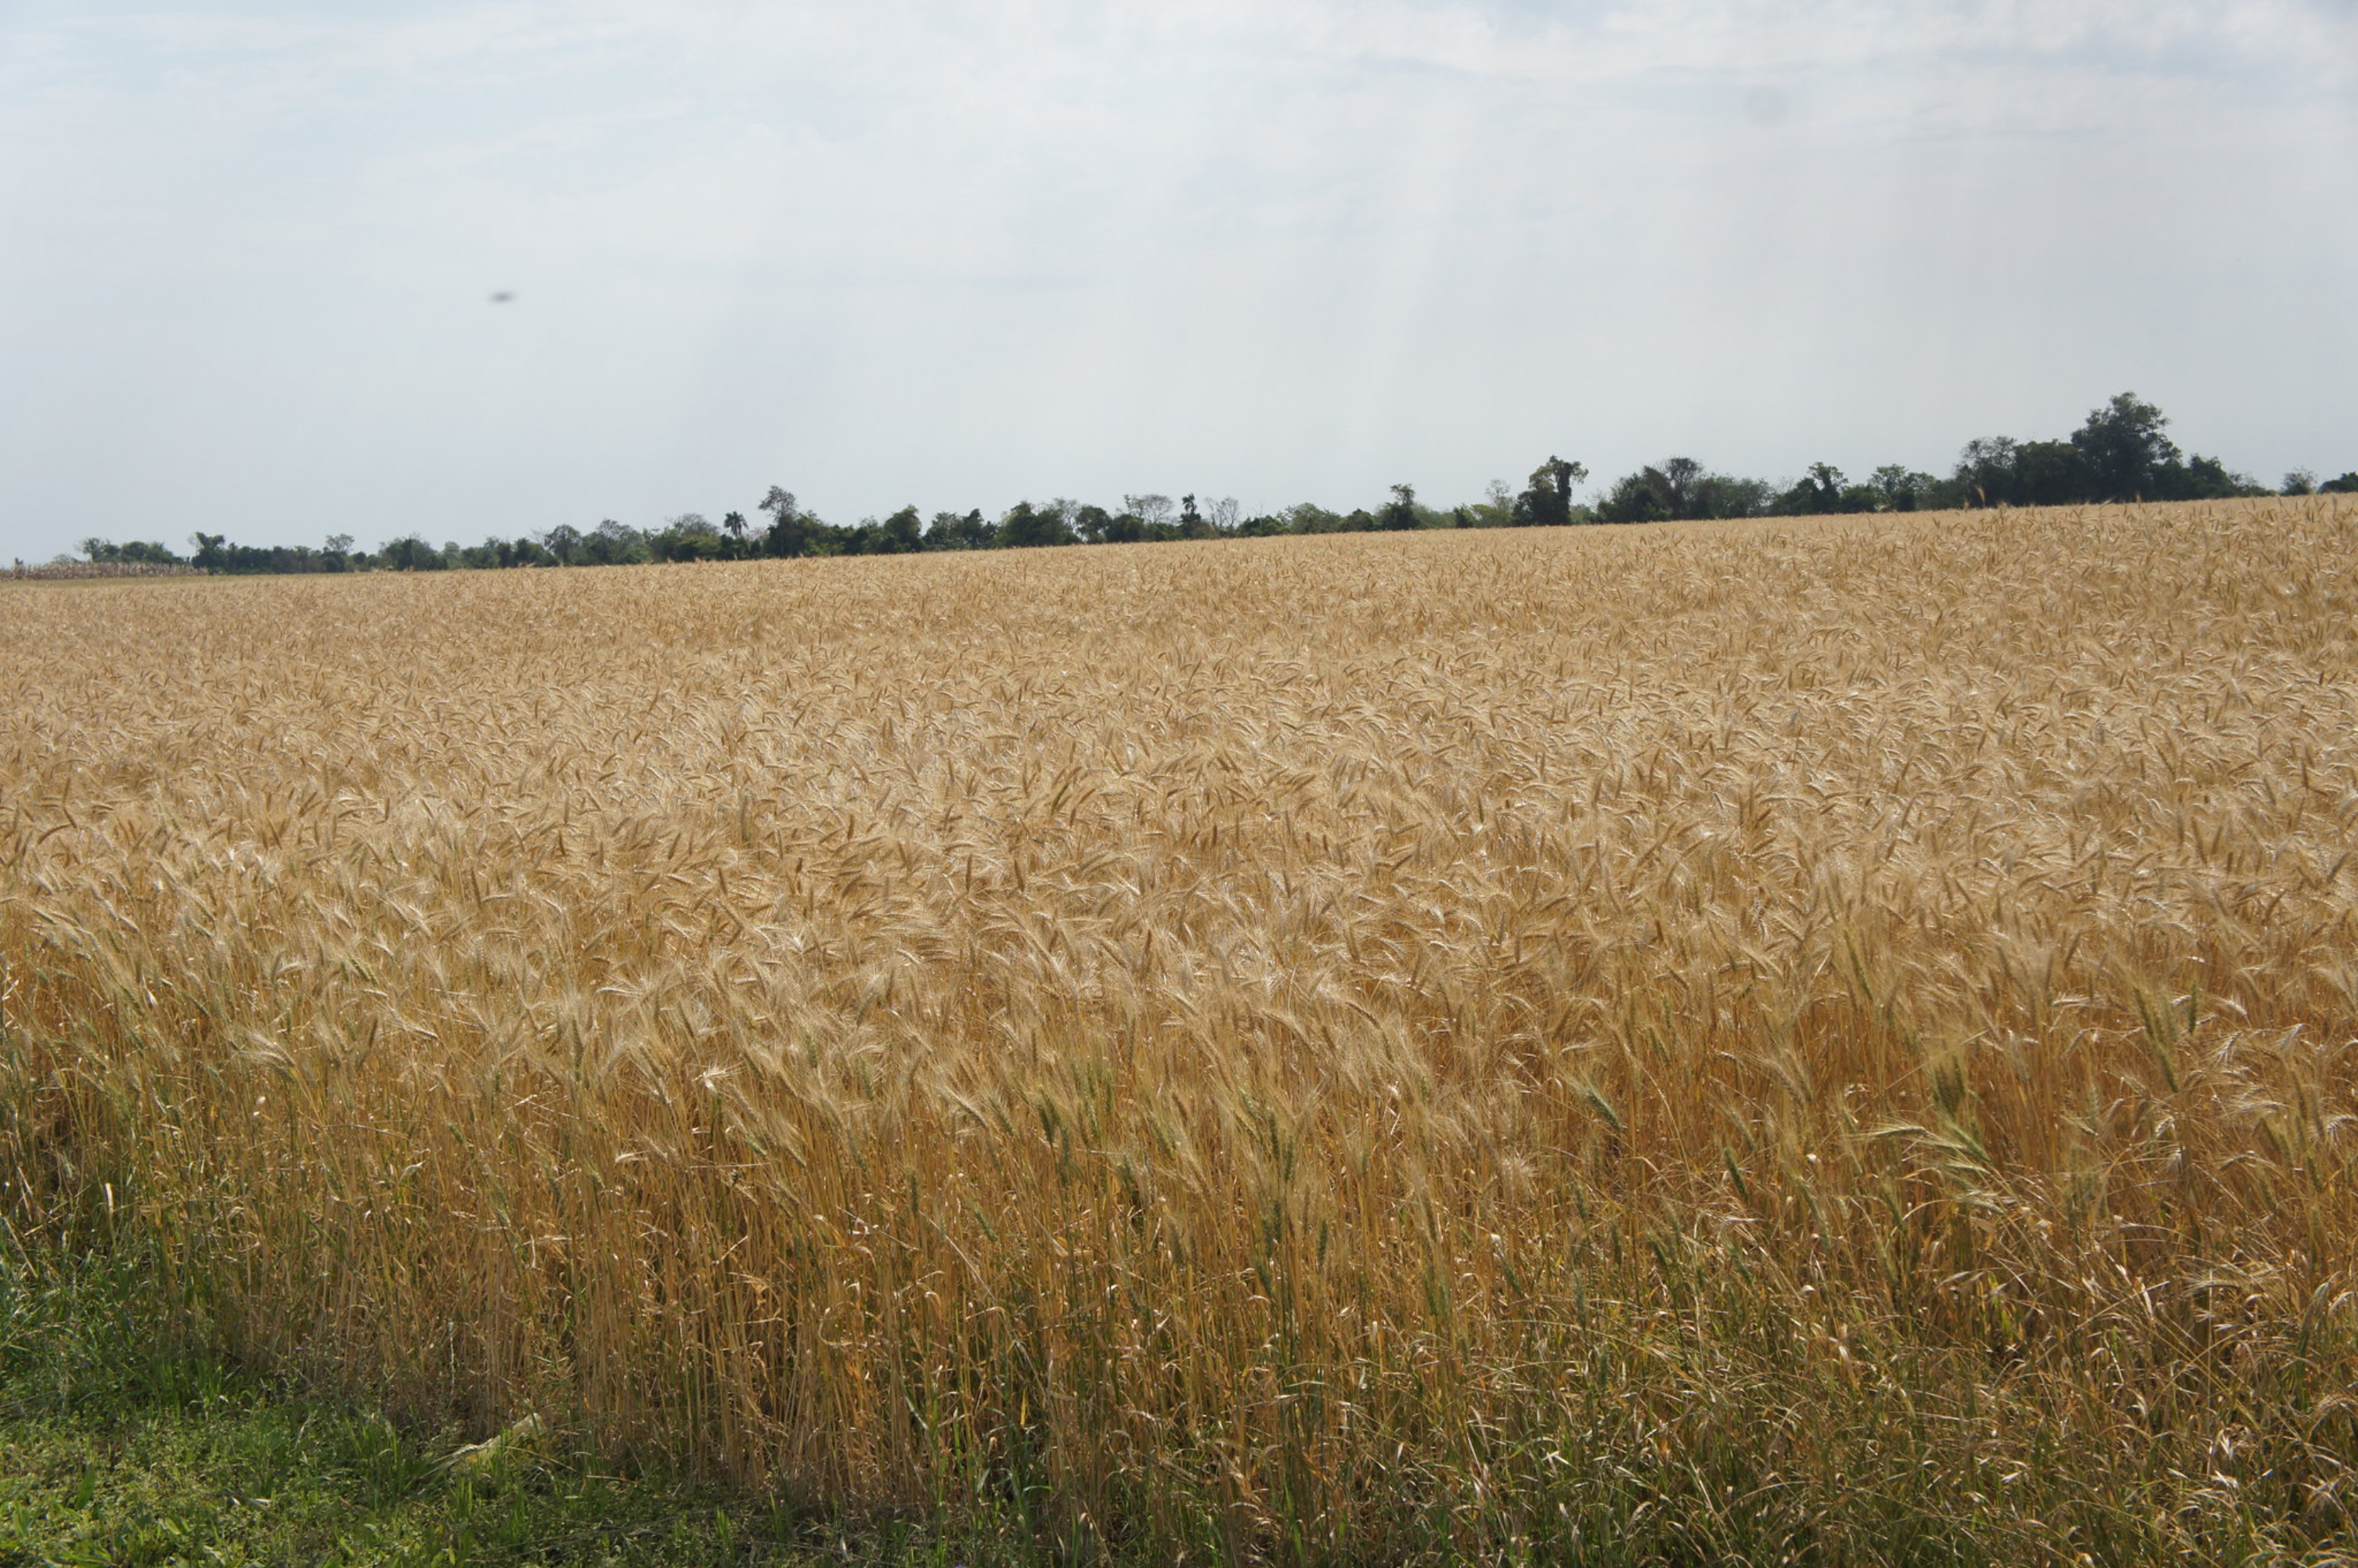 Un cultivo de trigo de la presente temporada, con buen desarrollo agronómico hasta el momento, que genera optimismo en espera de una buena cosecha.